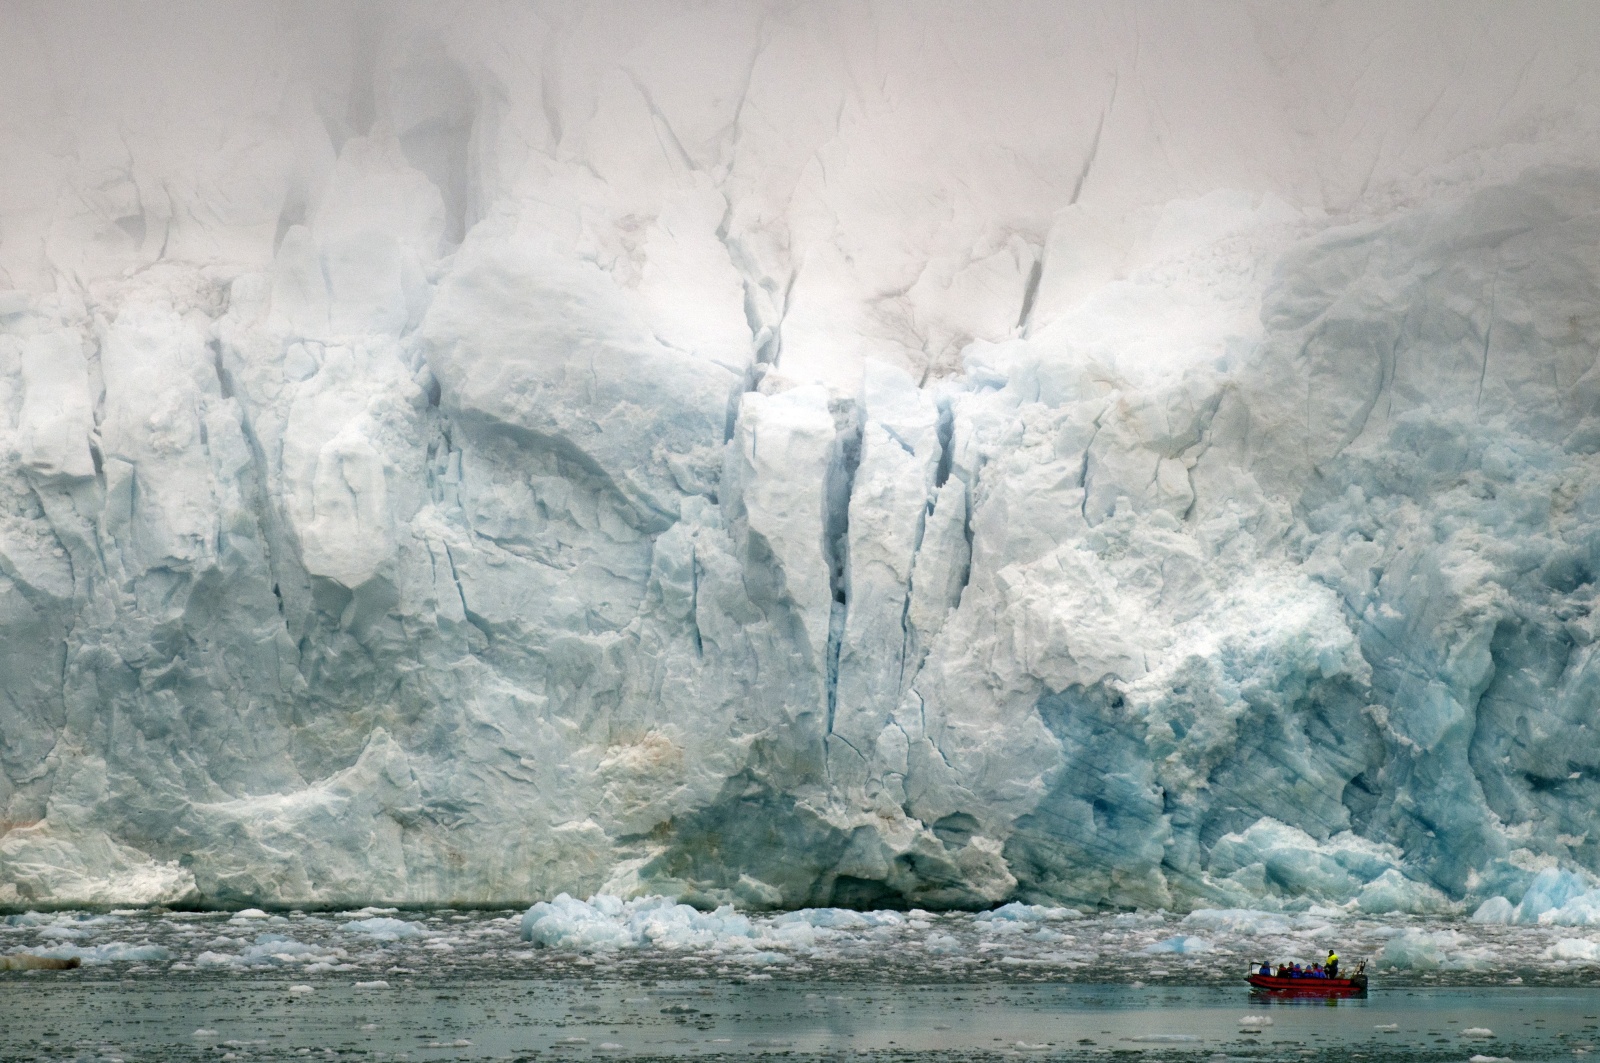 Lacerazioni Polari - Il ghiacciaio si butta nel mare e cadono blocchi con grande fragore dalla sommità nascosta nella nebbia. Un gruppo di visitatori si avvicina in gommone...l'uomo è veramente piccolo di fronte alla natura 